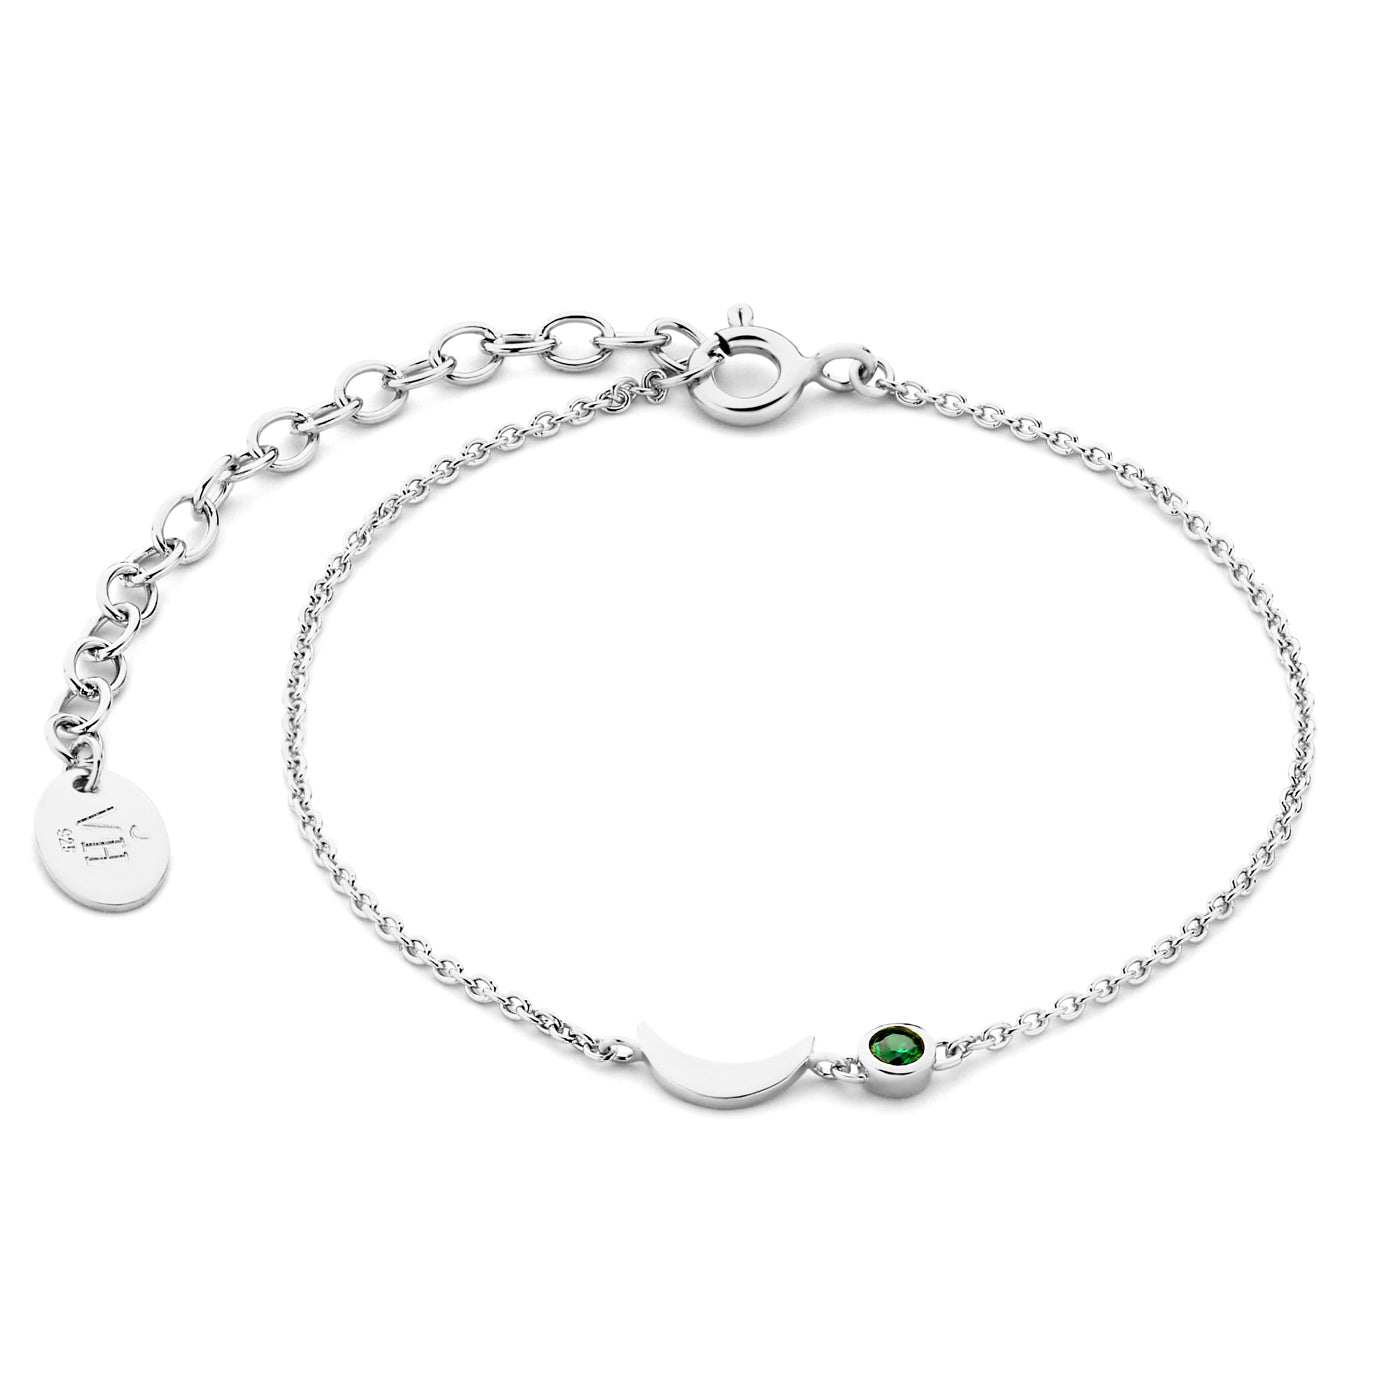 Luna bracelet en argent sterling 925 et oxyde de zirconium vert